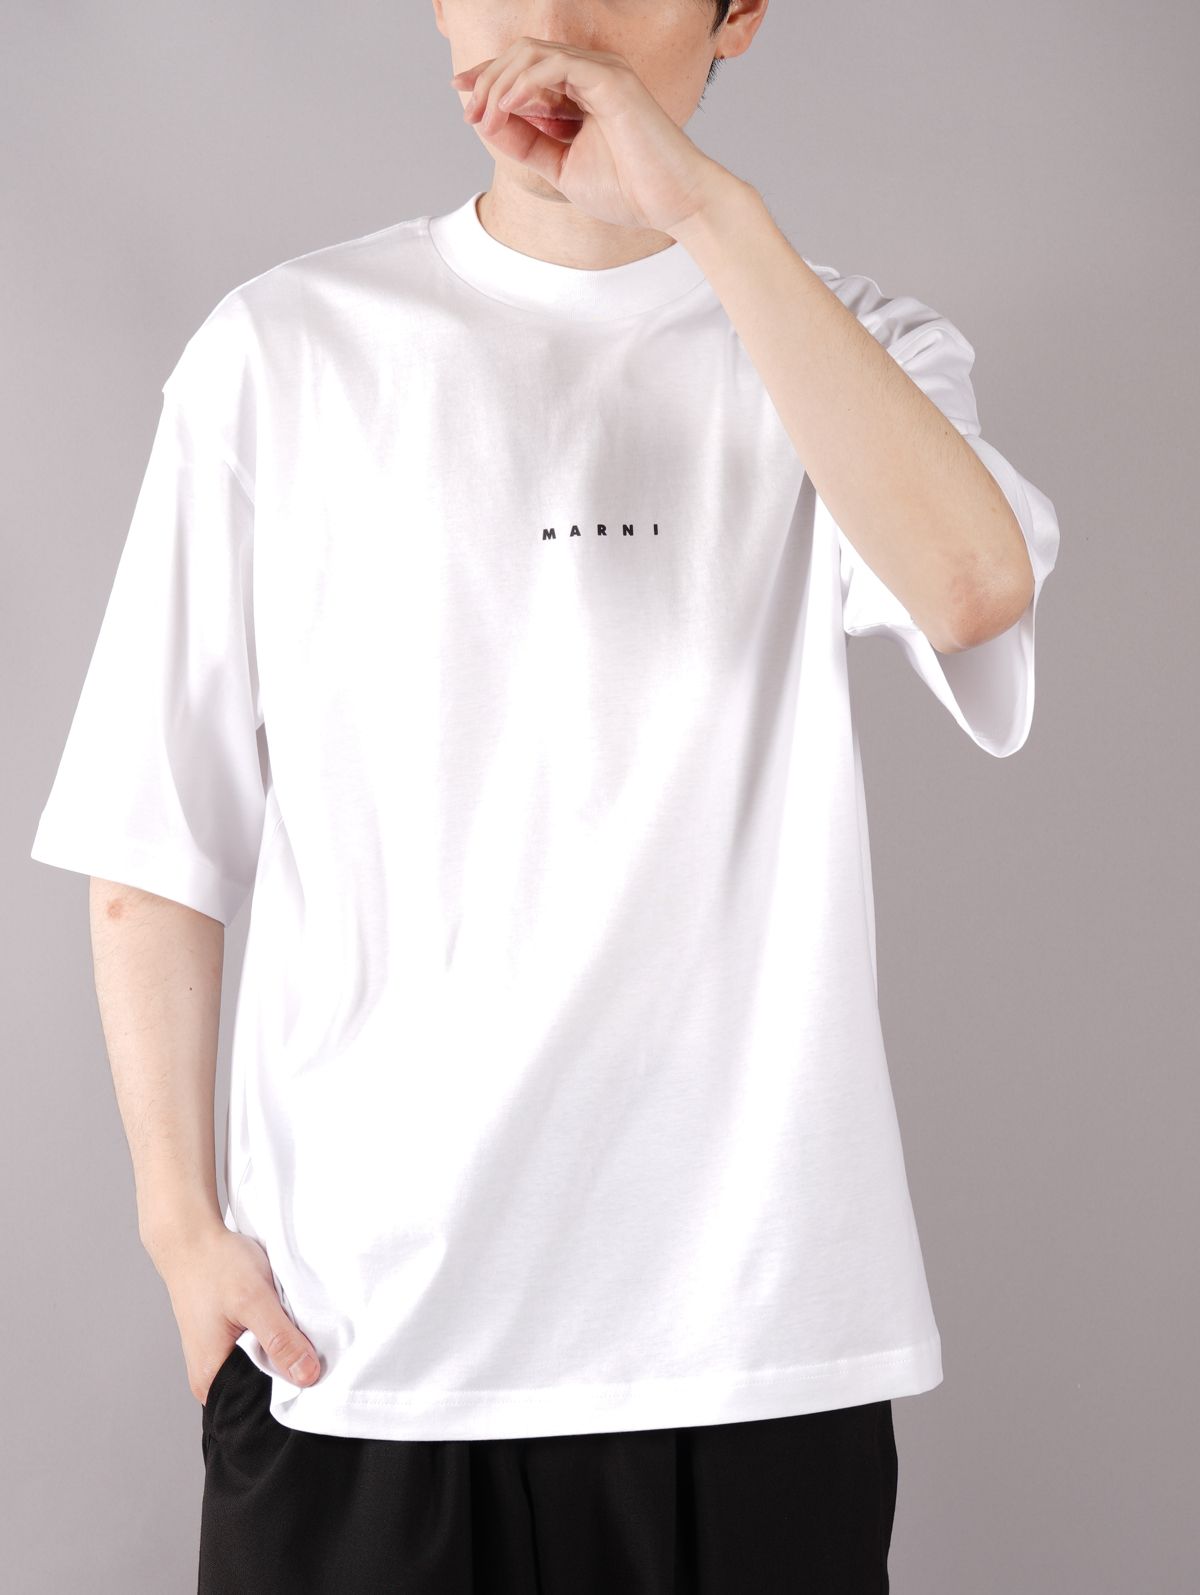 MARNI - 【ラスト1点】 LOGO T-SHIRT / ロゴ Tシャツ / オーバー 